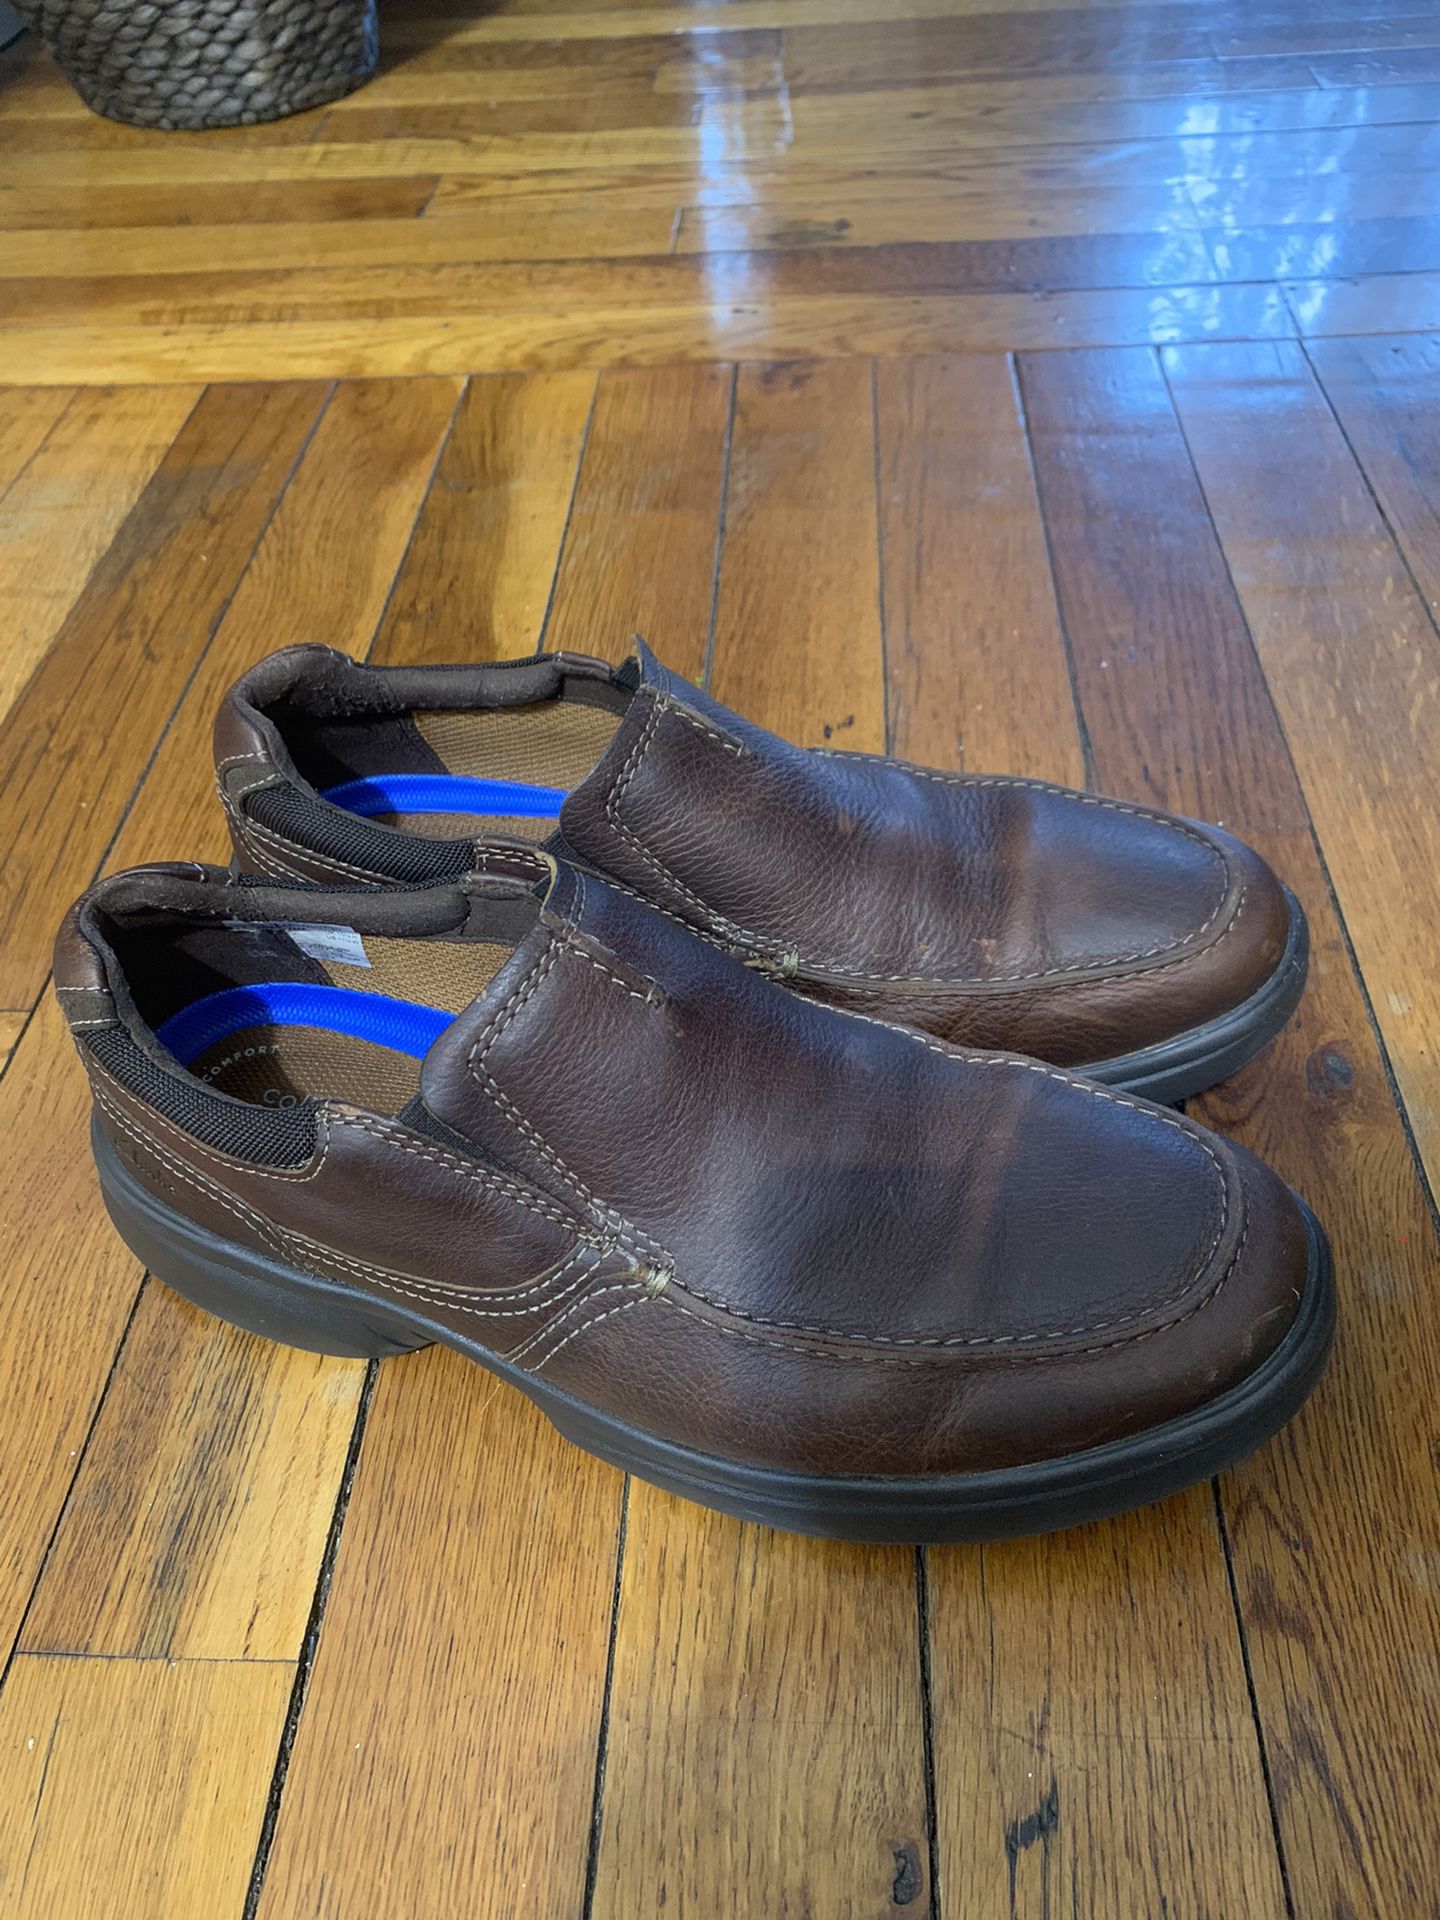 nåde teleskop høflighed Clarks Shoes for Sale in Queens, NY - OfferUp